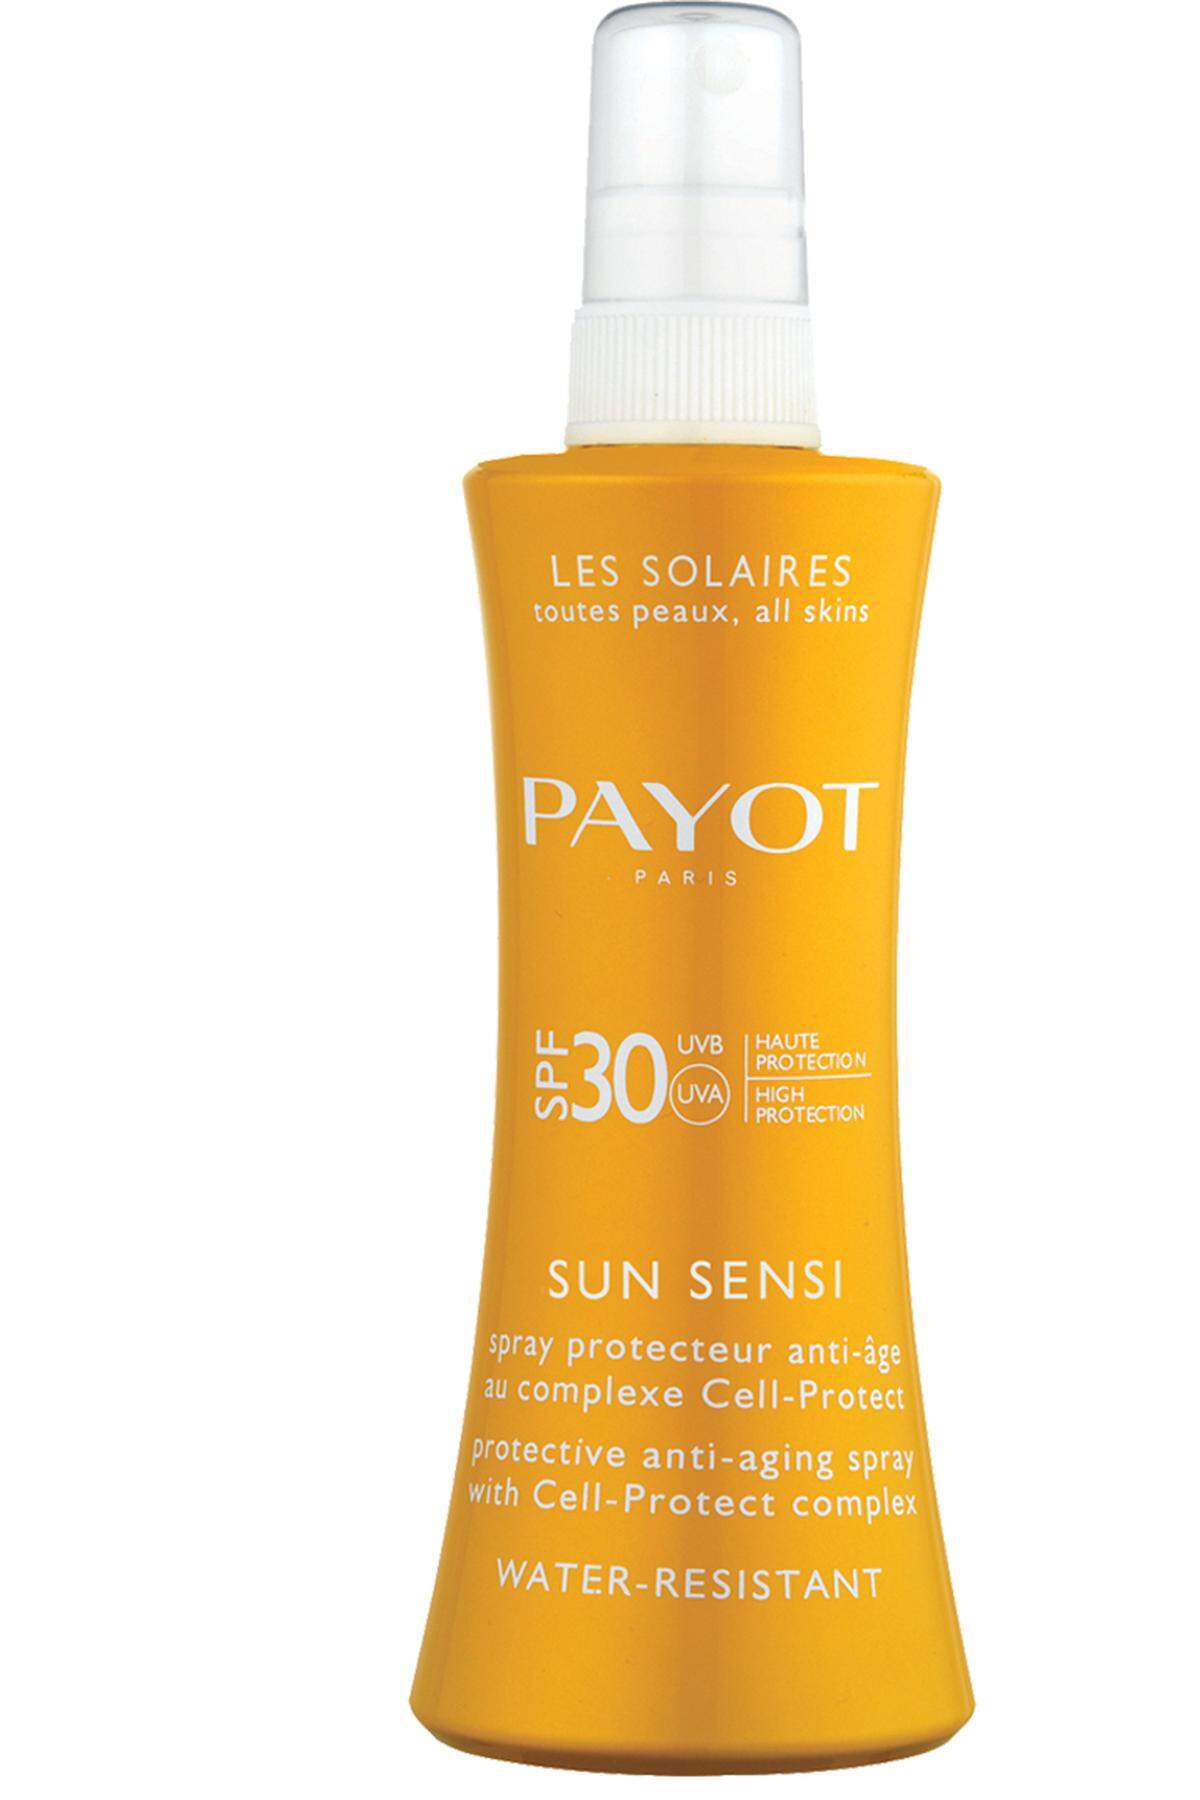 „Sun Sensi“ von Payot Paris, 29,95 Euro, im ausgewählten Fachhandel erhältlich